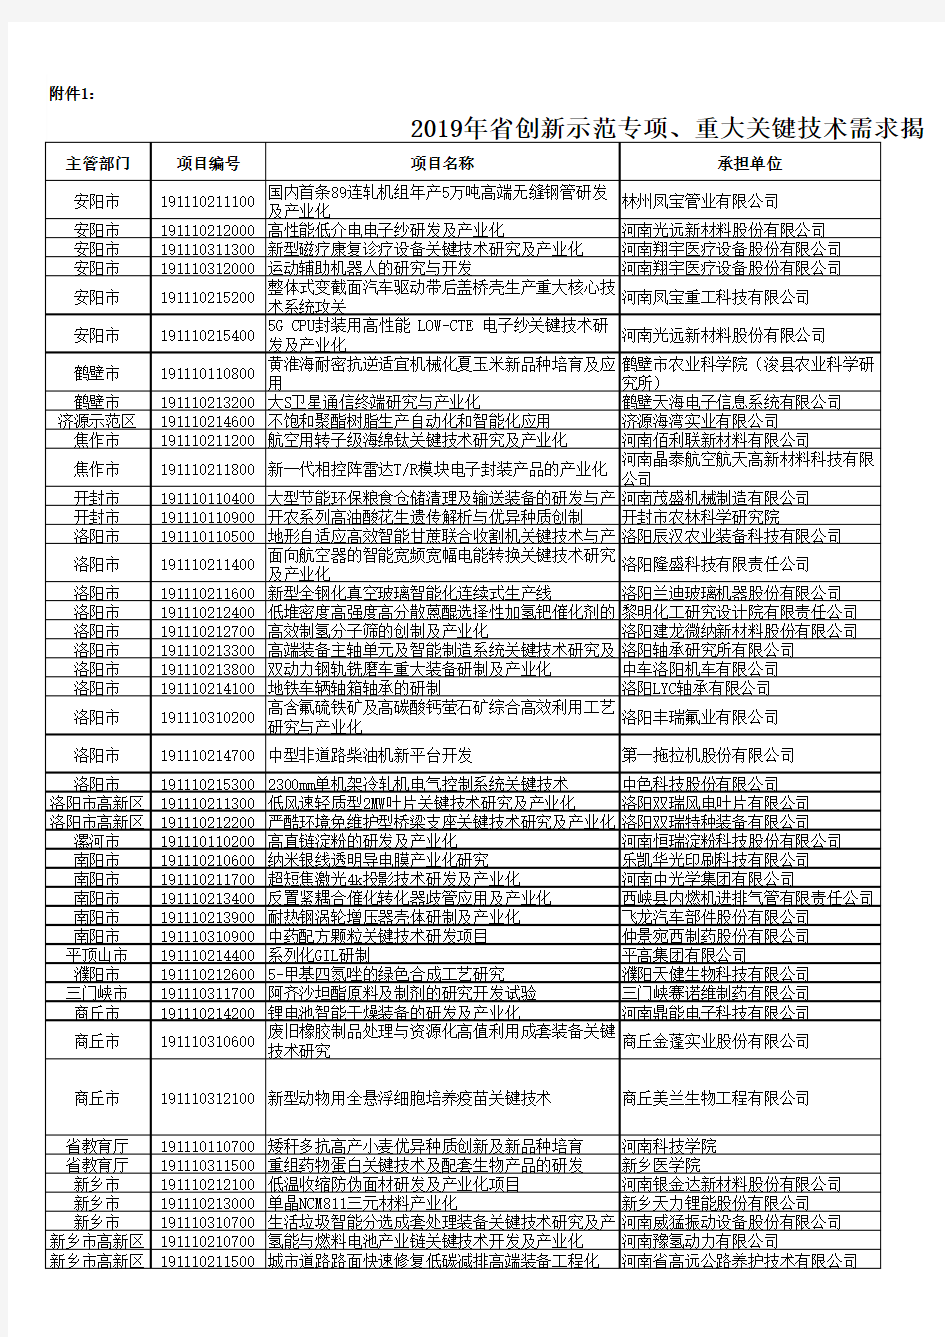 2019年度河南省创新示范专项和重大关键技术需求揭榜攻关项目清单